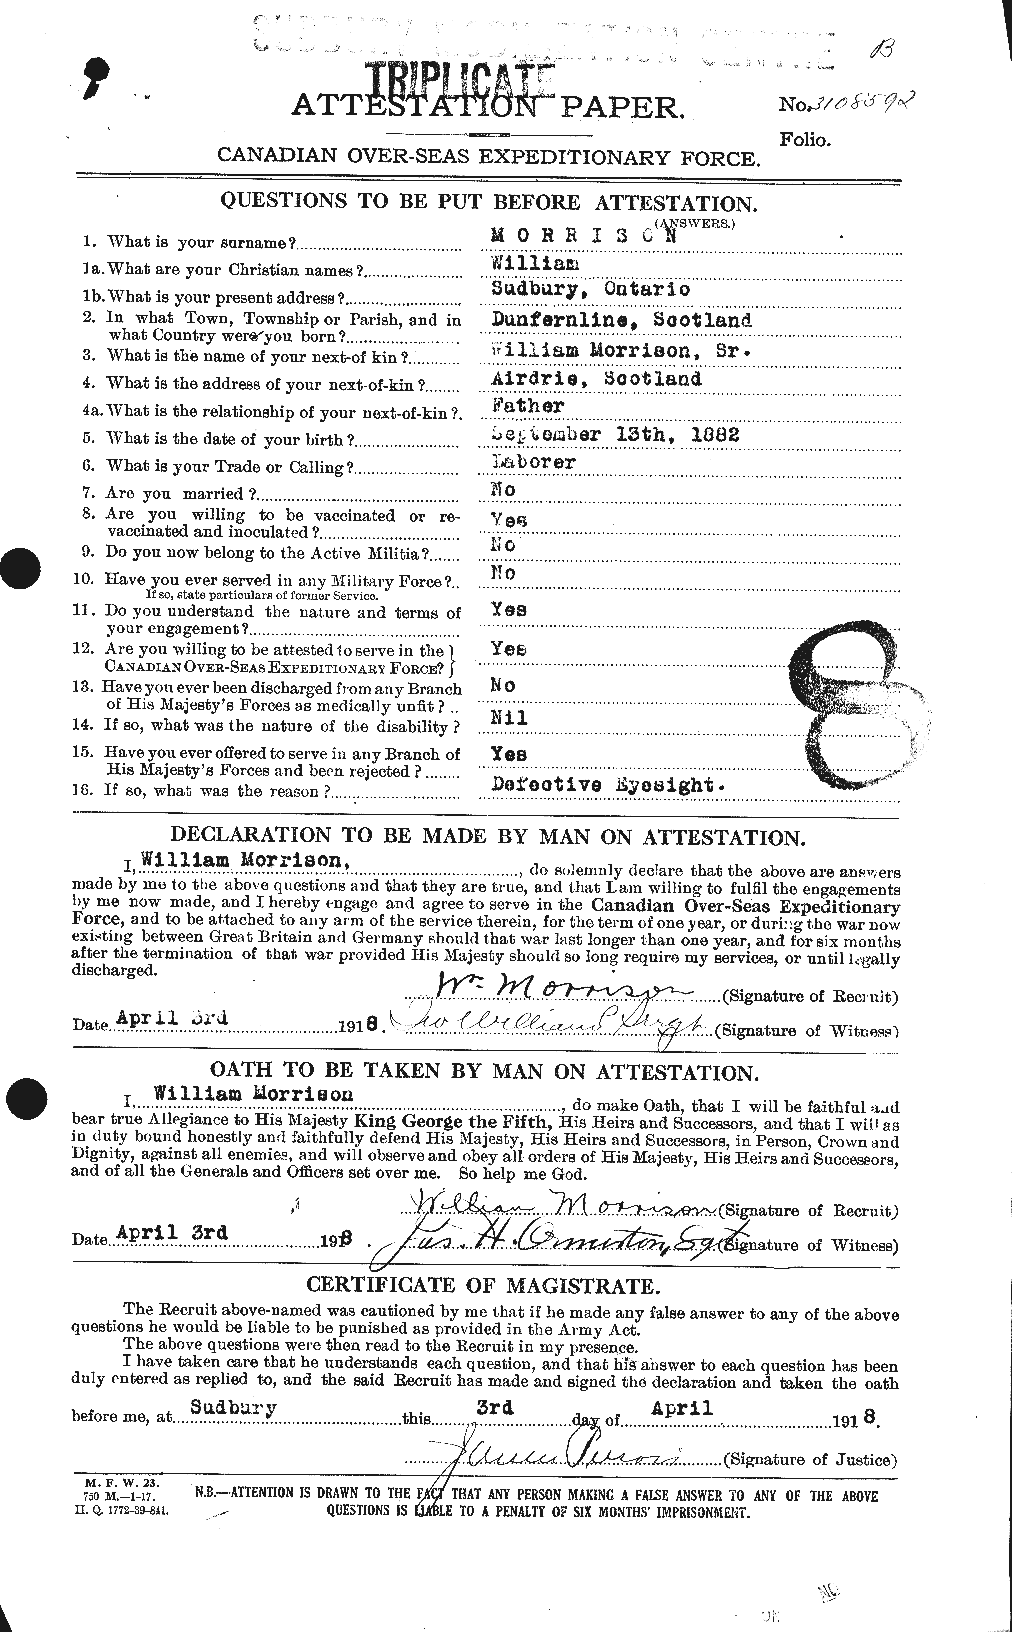 Dossiers du Personnel de la Première Guerre mondiale - CEC 509258a